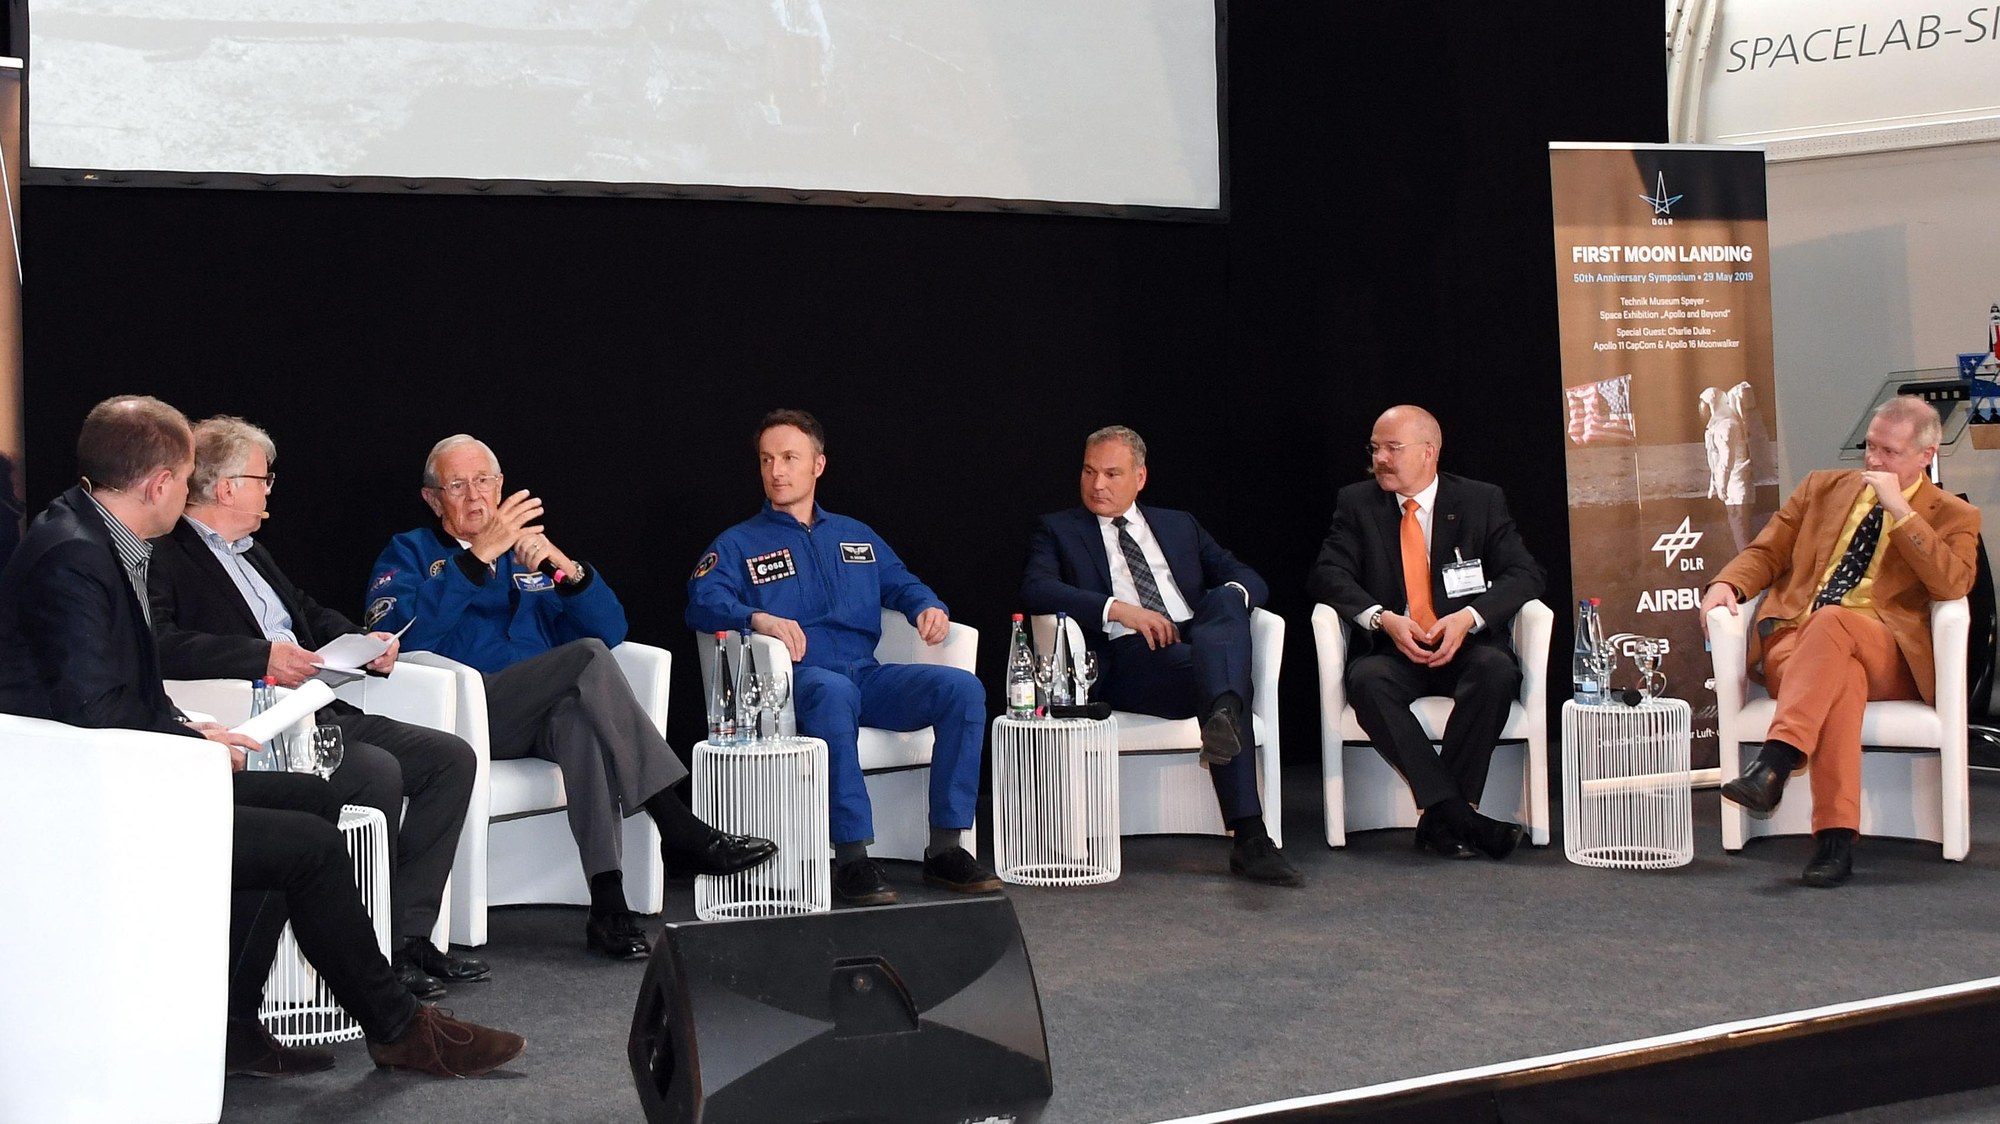 Podiumsdiskussion zur Zukunft astronautische Mondmissionen